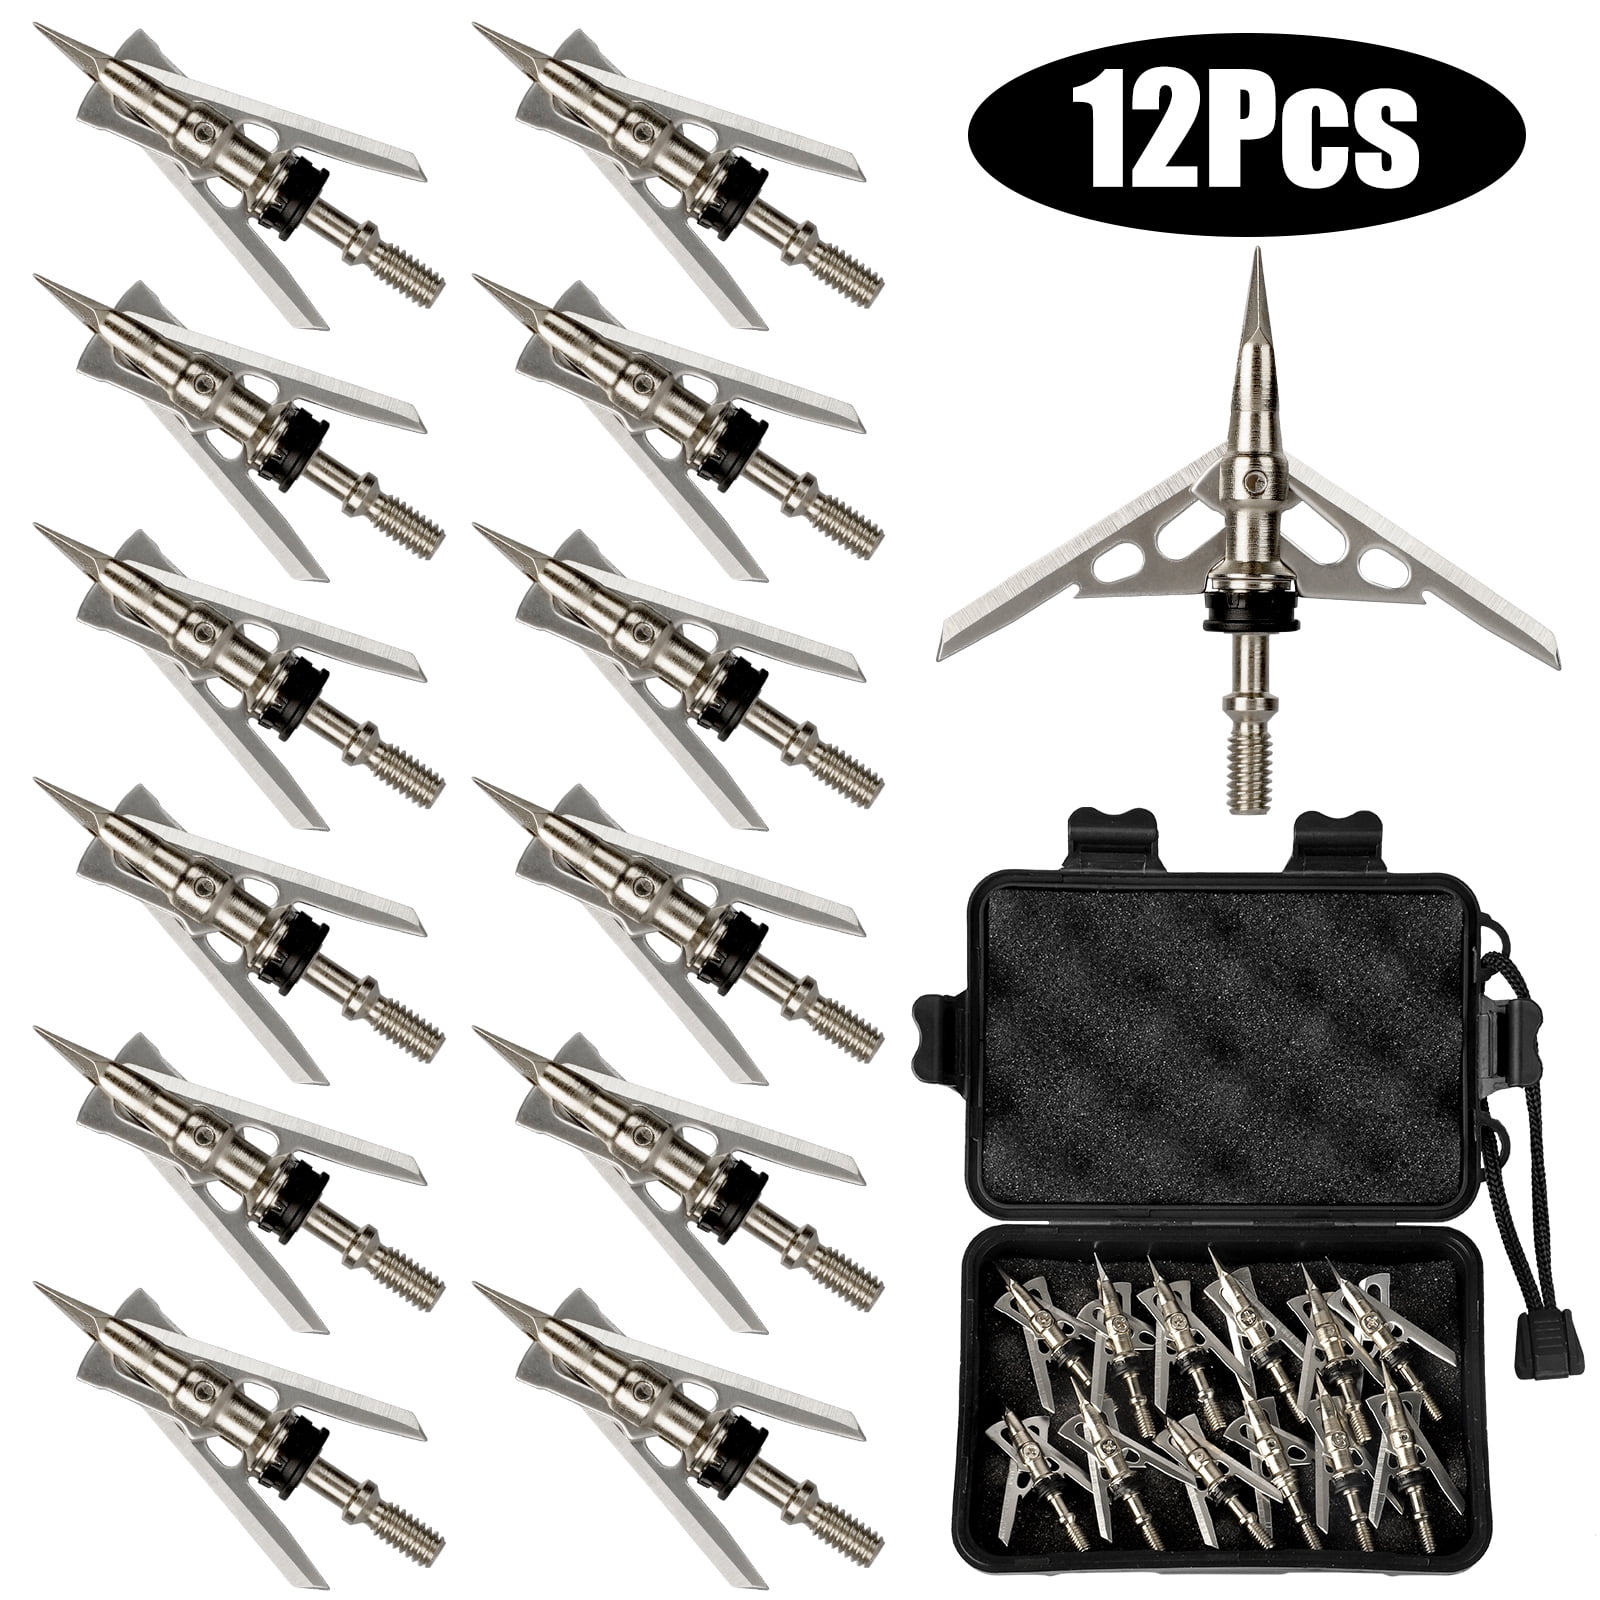 100 Grain Each Pack of 12 PCS Screw in Archery Bullet Points for Arrows